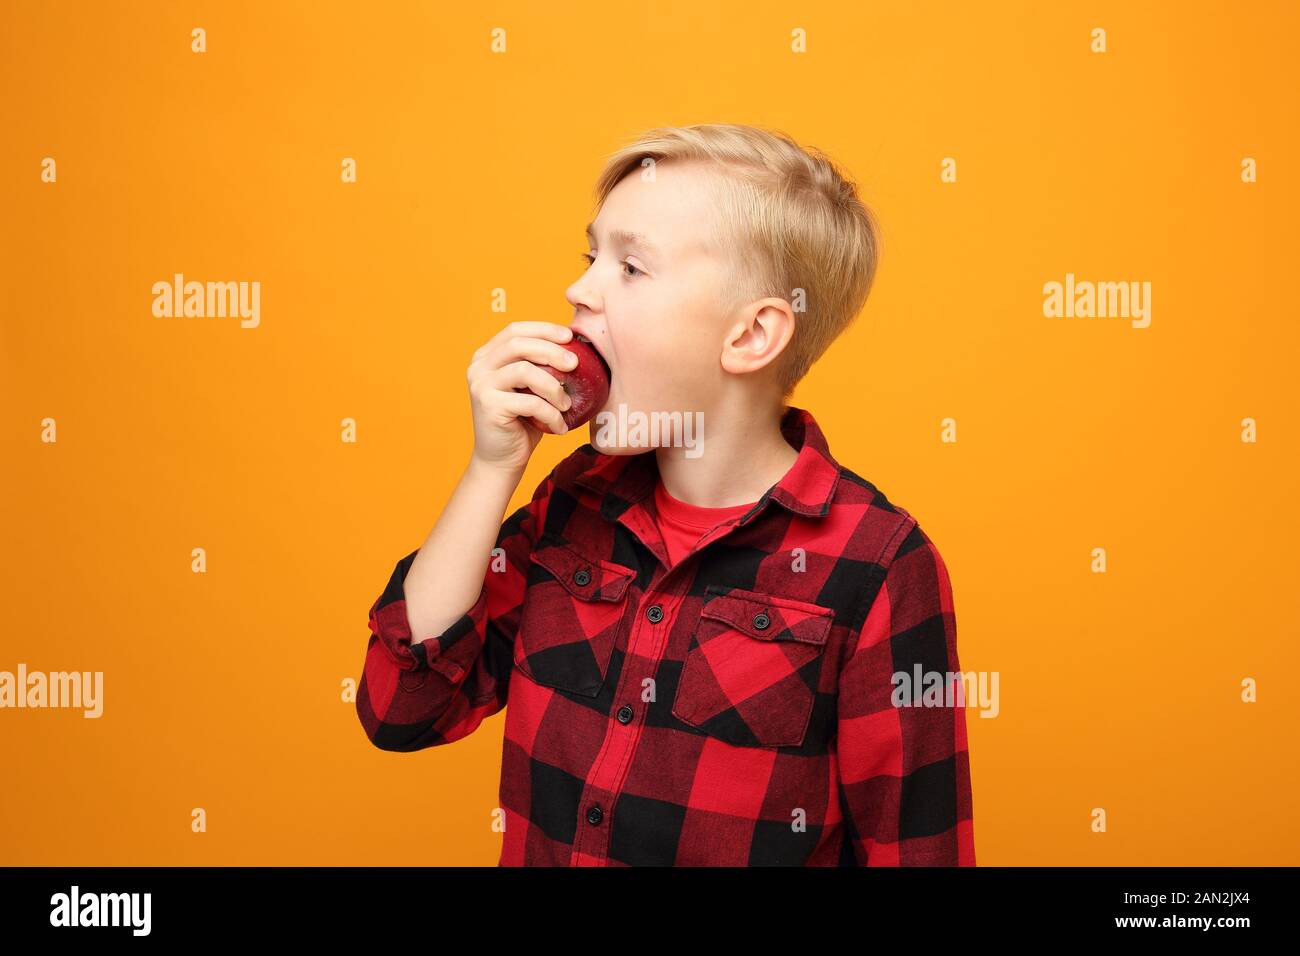 Le garçon mange des fruits, une alimentation saine pour les enfants. Beau garçon caucasien souriant dans la chemise rouge sur fond jaune. Horizontale, droite. Banque D'Images